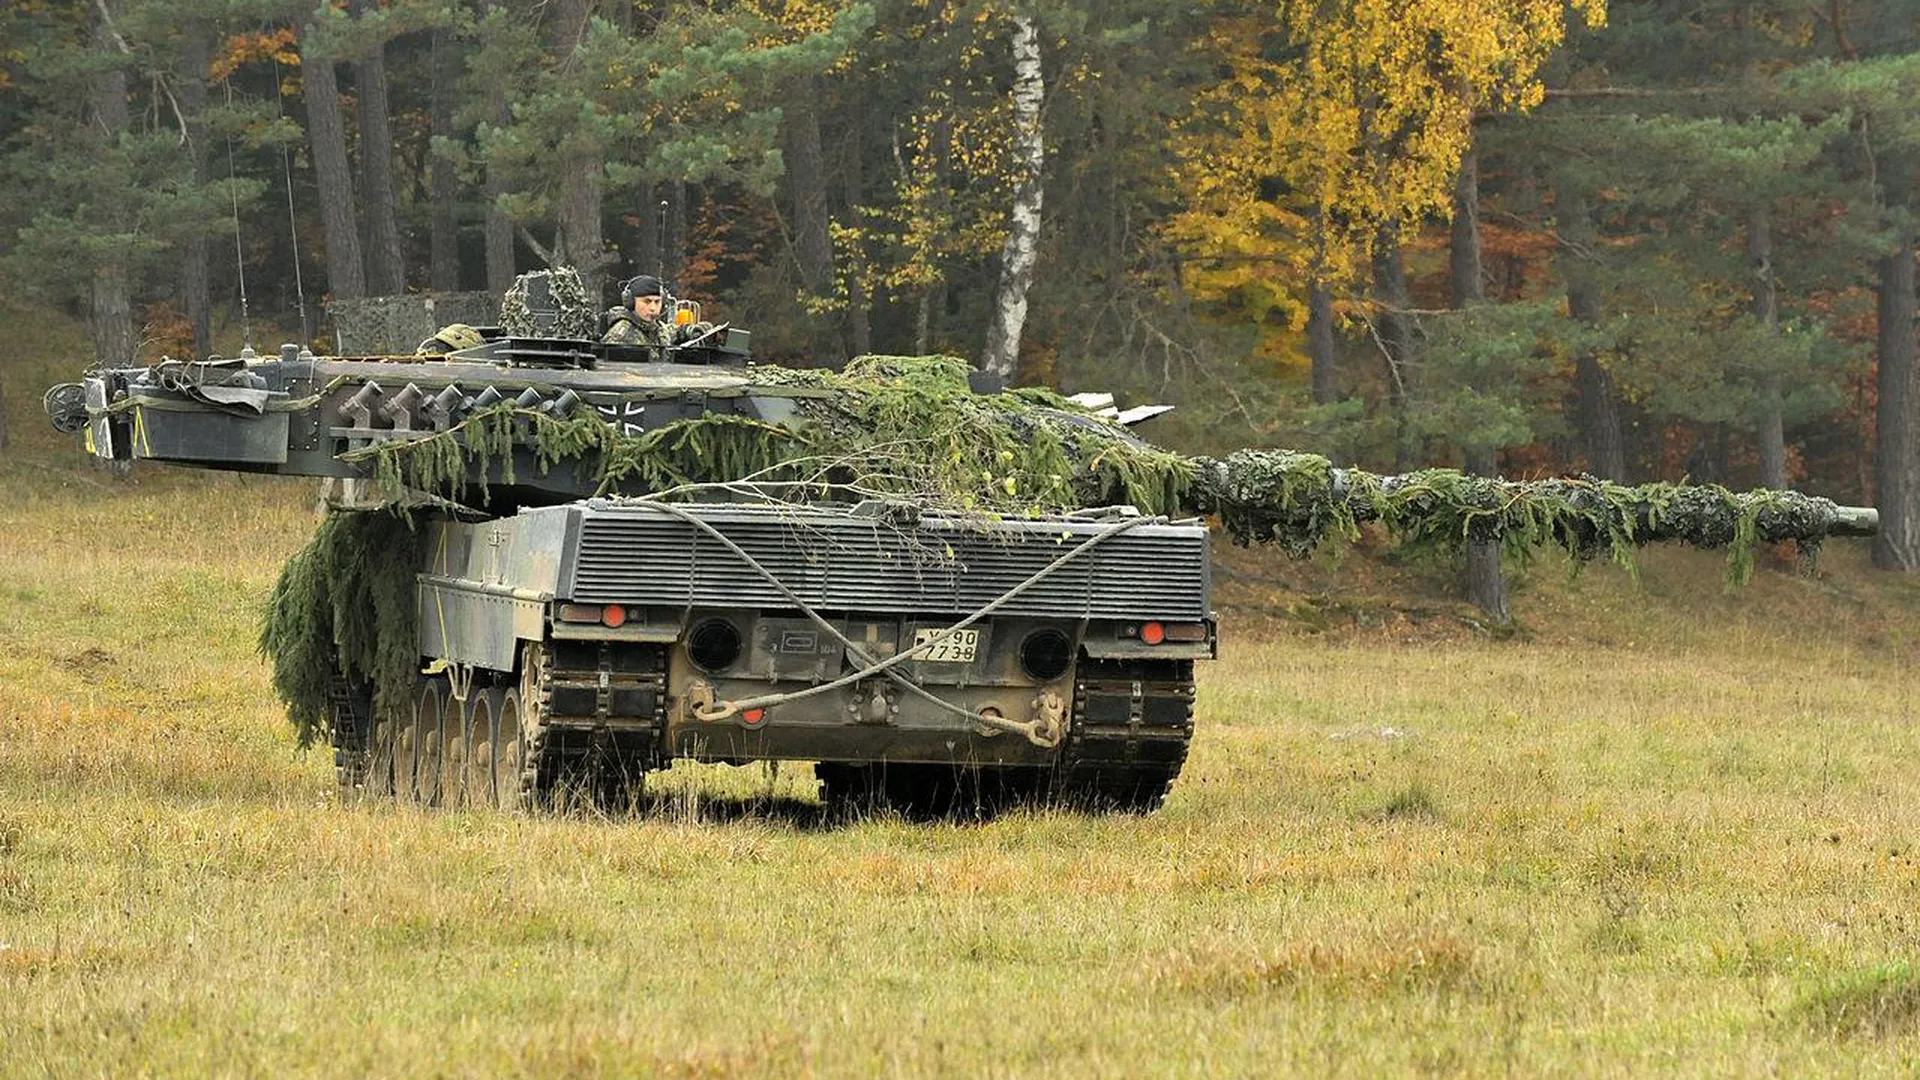 Leopard 2 104-го танкового батальона 10-й танковой дивизии во время учений Saber Junction 2012 в Хоэнфельсе, 25 октября 2012 года